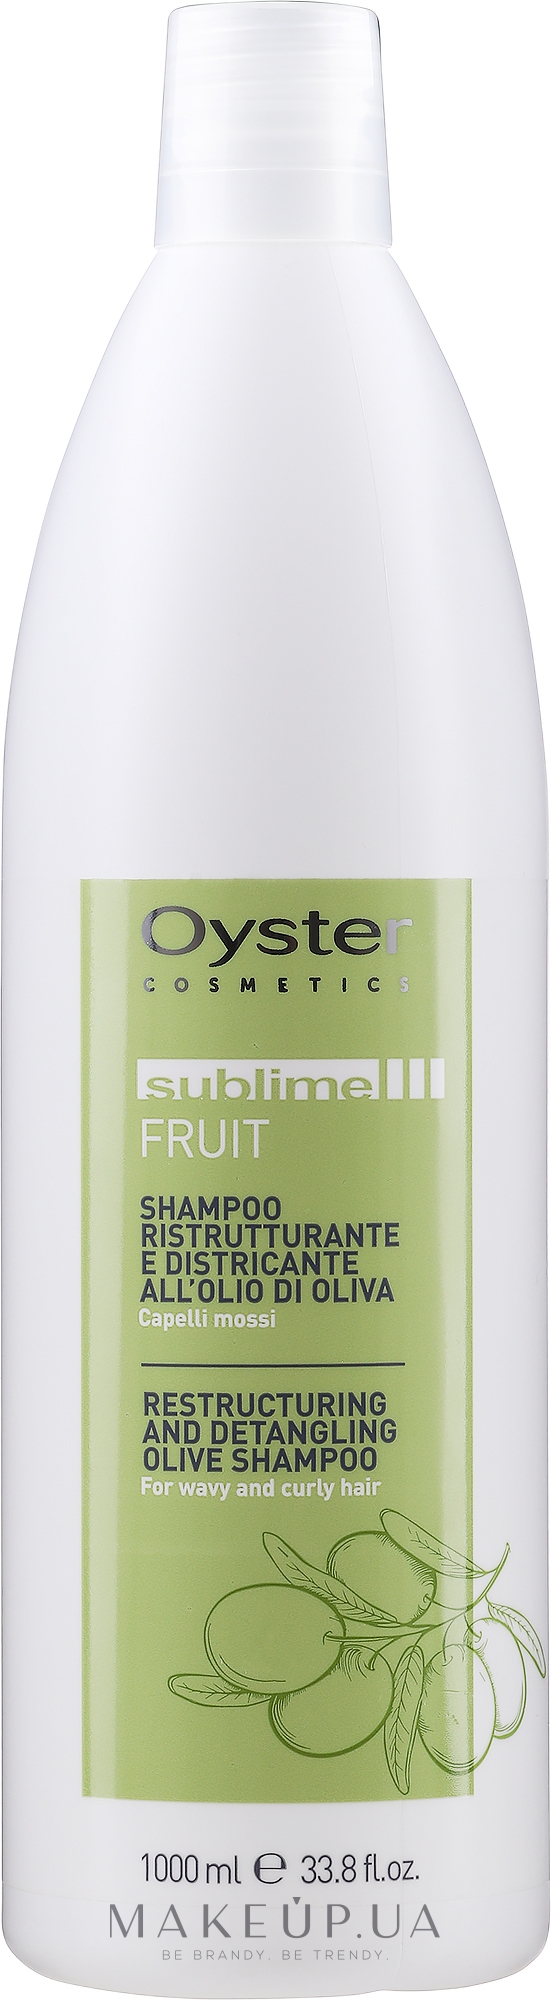 Шампунь для волос с маслом оливы - Oyster Cosmetics Sublime Fruit Shampoo — фото 1000ml